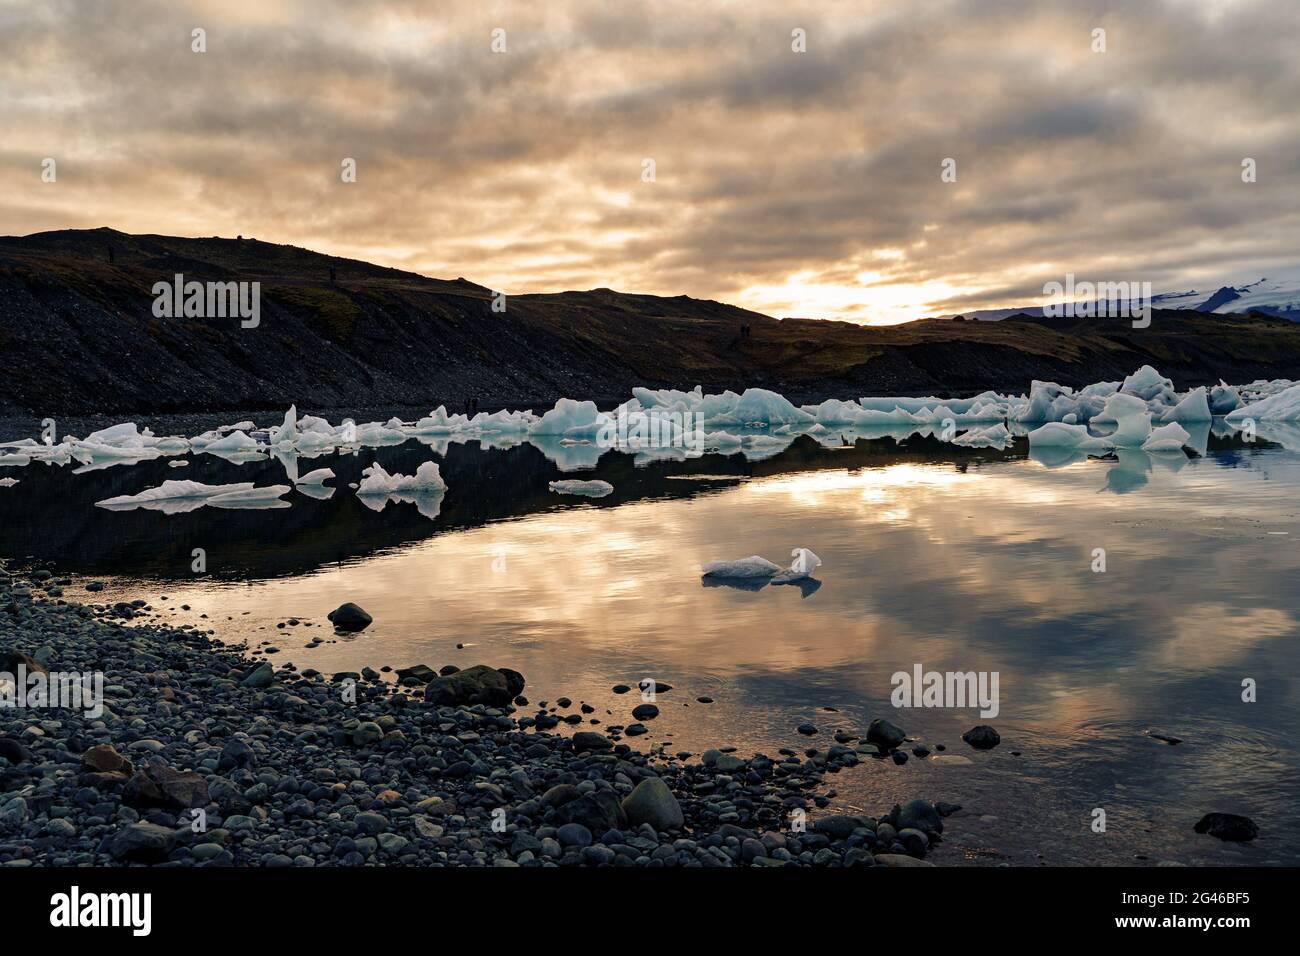 Gli iceberg si allontanano nella laguna al tramonto mentre il sole tramonta dietro la catena montuosa. Jokulsarlon, Islanda Foto Stock